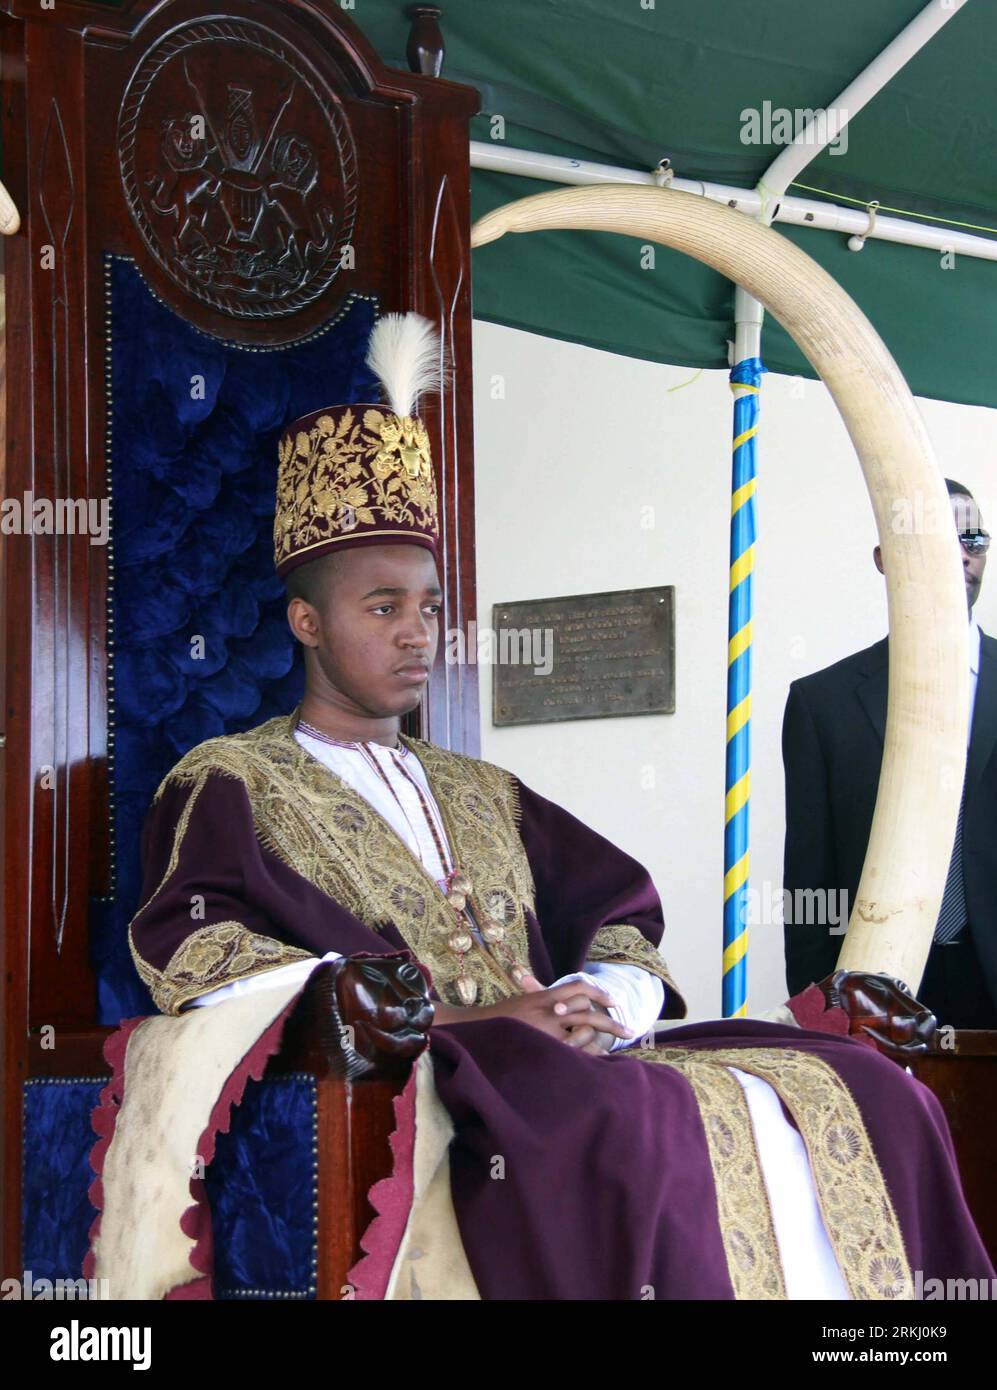 Bildnummer : 55935640 Datum : 10.09.2011 Copyright : imago/Xinhua OUGANDA, 11 septembre 2011 (Xinhua) -- Oyo Nyimba (2e L), le roi de Tooro, assiste à une cérémonie annuelle dans le Royaume de Tooro dans l'ouest de l'Ouganda, le 10 septembre 2011. Le Royaume de Tooro, l'un des sept royaumes de l'Ouganda, est situé dans la partie occidentale du pays avec une population de 2 millions d'habitants. (Xinhua/Yuan Qing) (cl) UGANDA-TOORO-KING-CEREMONY PUBLICATIONxNOTxINxCHN People Politik xjh x0x premiumd 2011 hoch 55935640 Date 10 09 2011 Copyright Imago XINHUA Ouganda sept 11 2011 XINHUA Oyo 2e l le Roi de assiste à la cérémonie annuelle à Kingd Banque D'Images